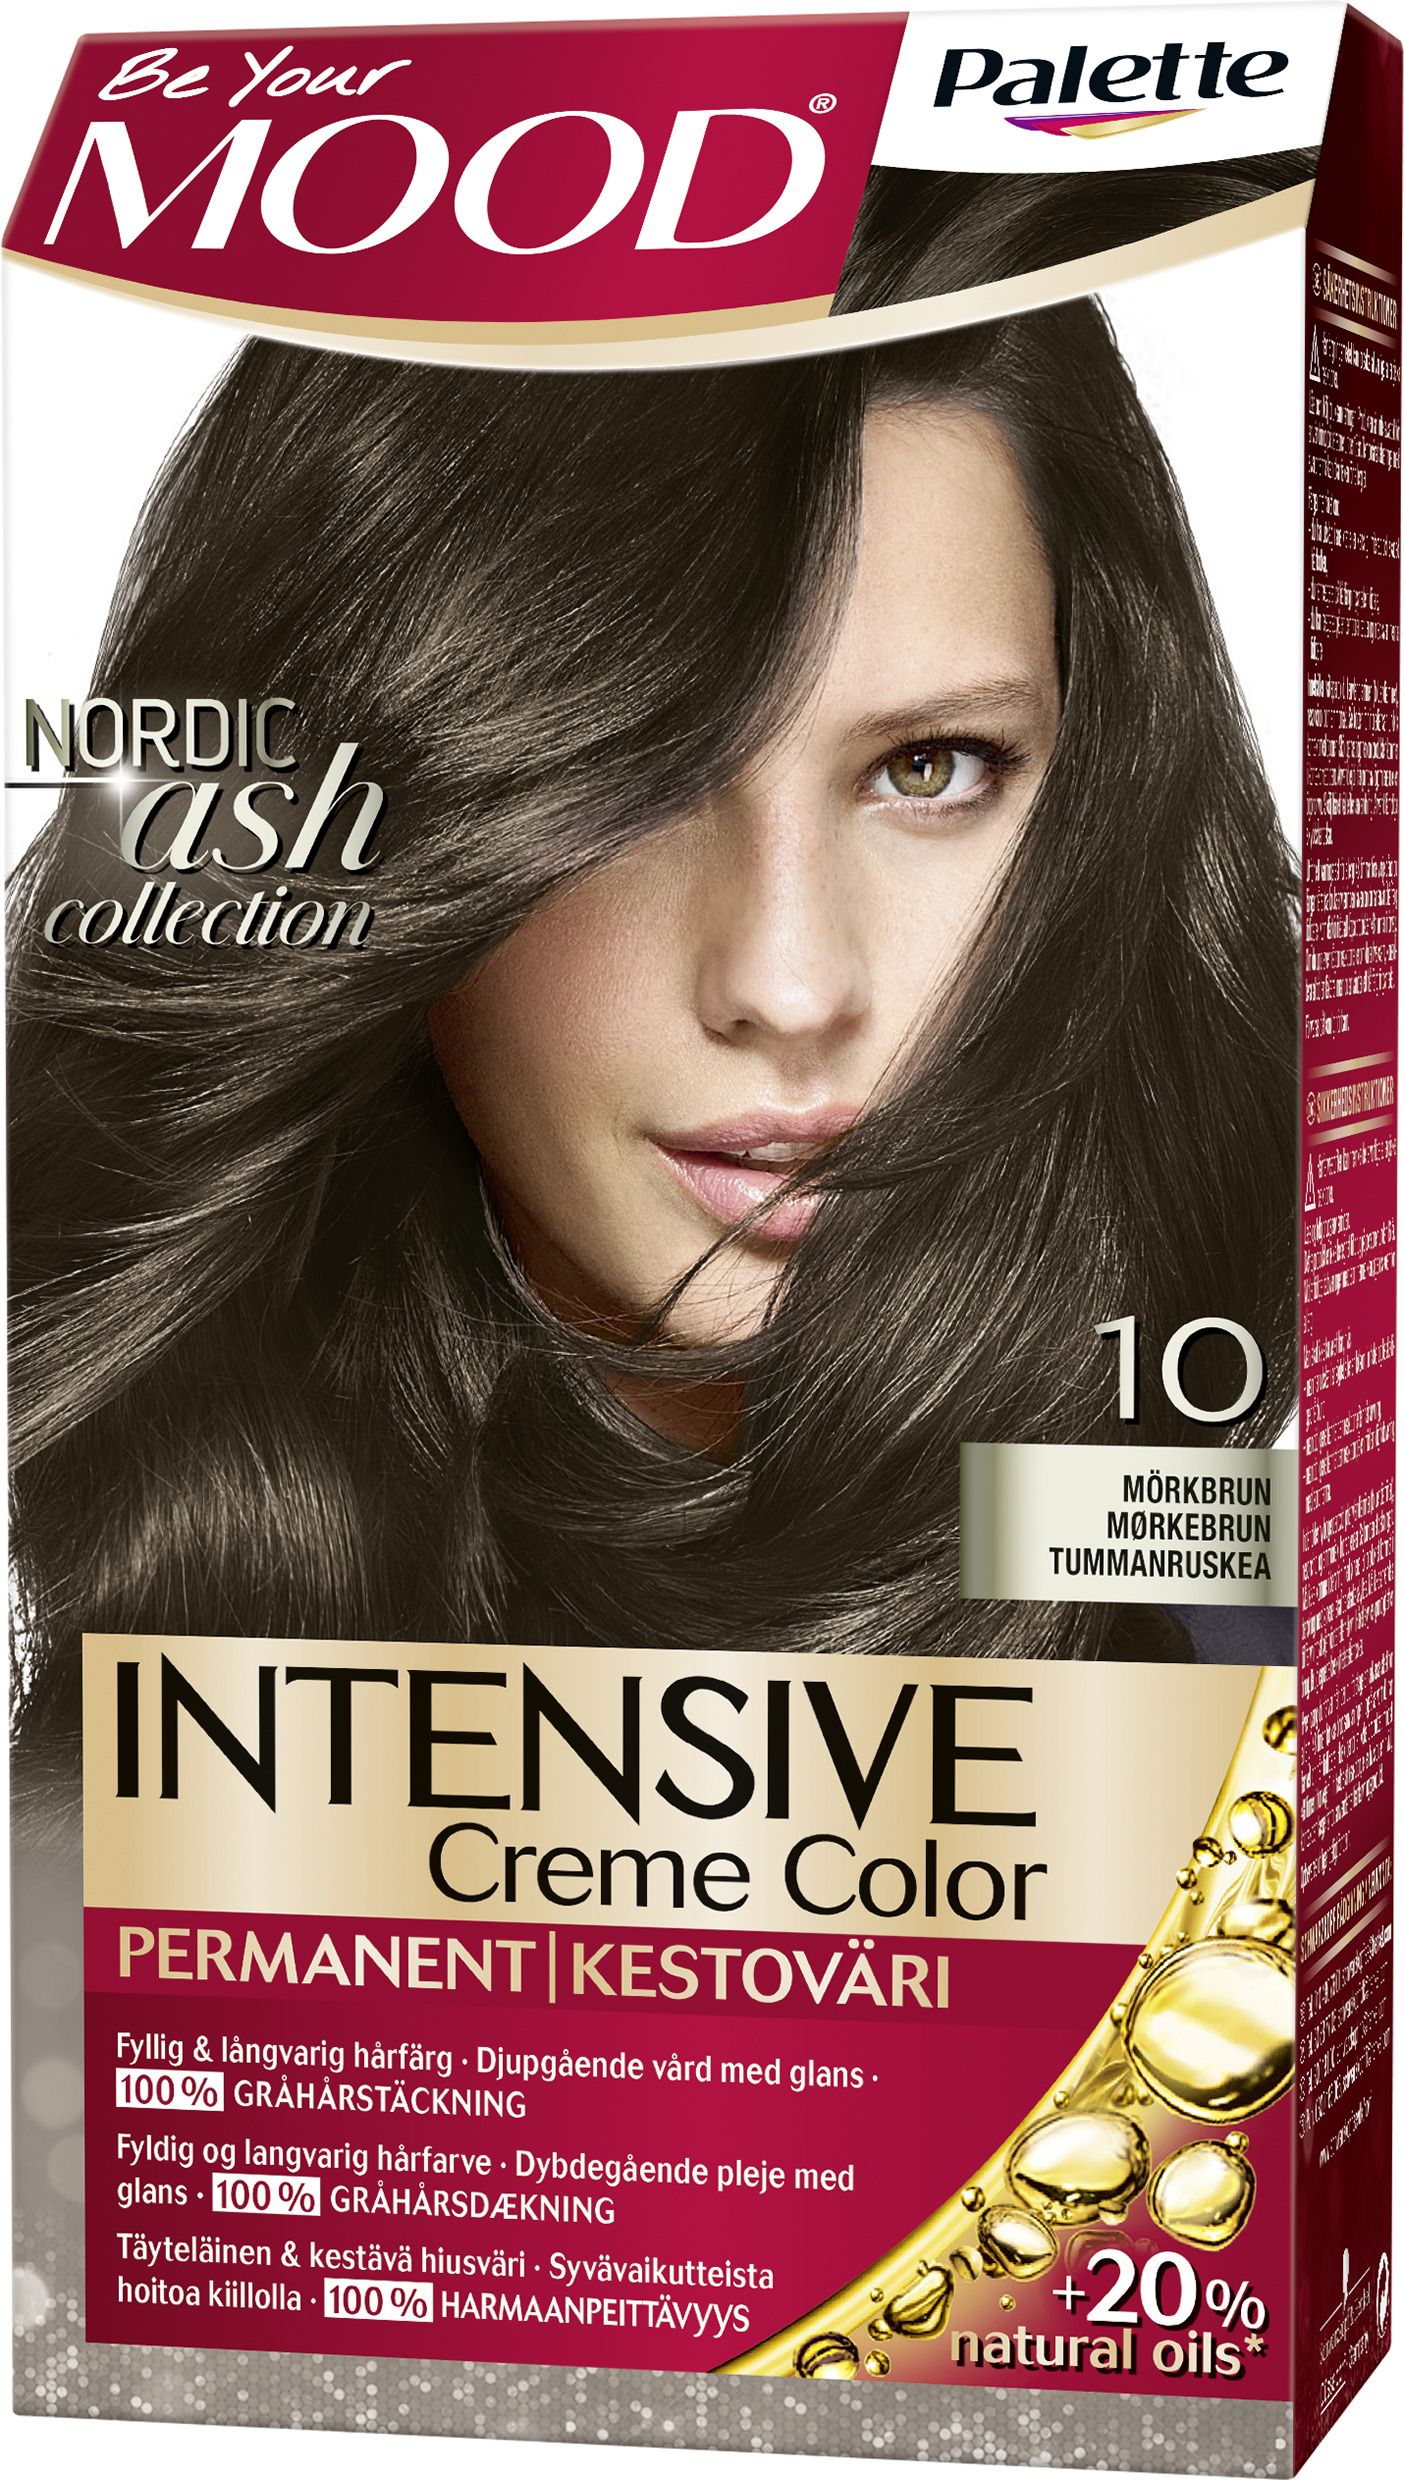 MOOD Palette Intensive Creme Color 10 Mörkbrun